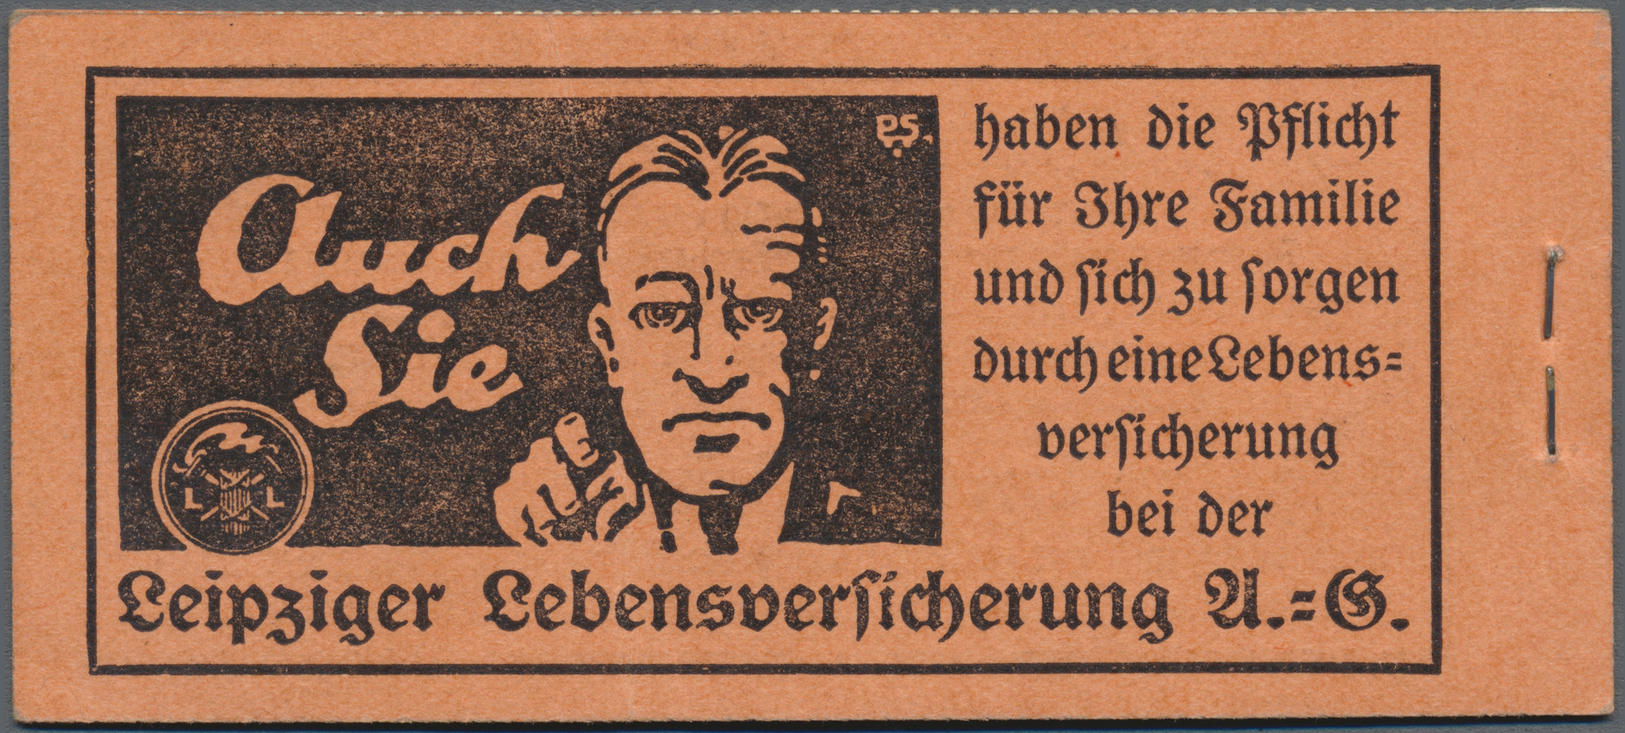 */** Deutsches Reich - Markenheftchen: 1926, Schiller/Friedrich Der Große, Ordnungsnummer "4", Komplettes - Postzegelboekjes